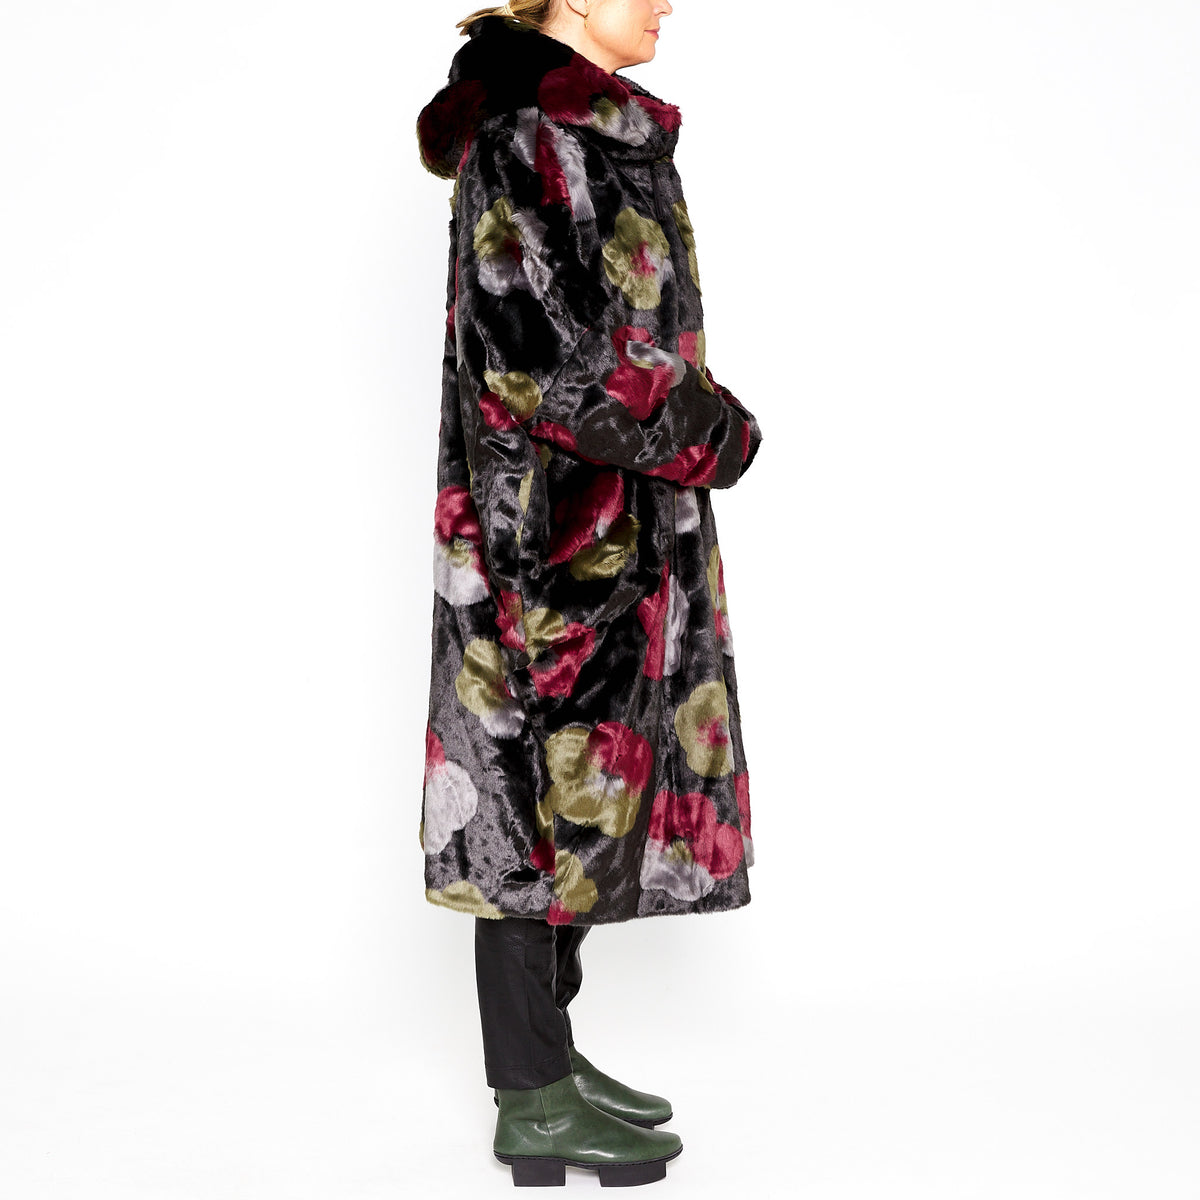 RUB-323-1203 Floral Fur Coat